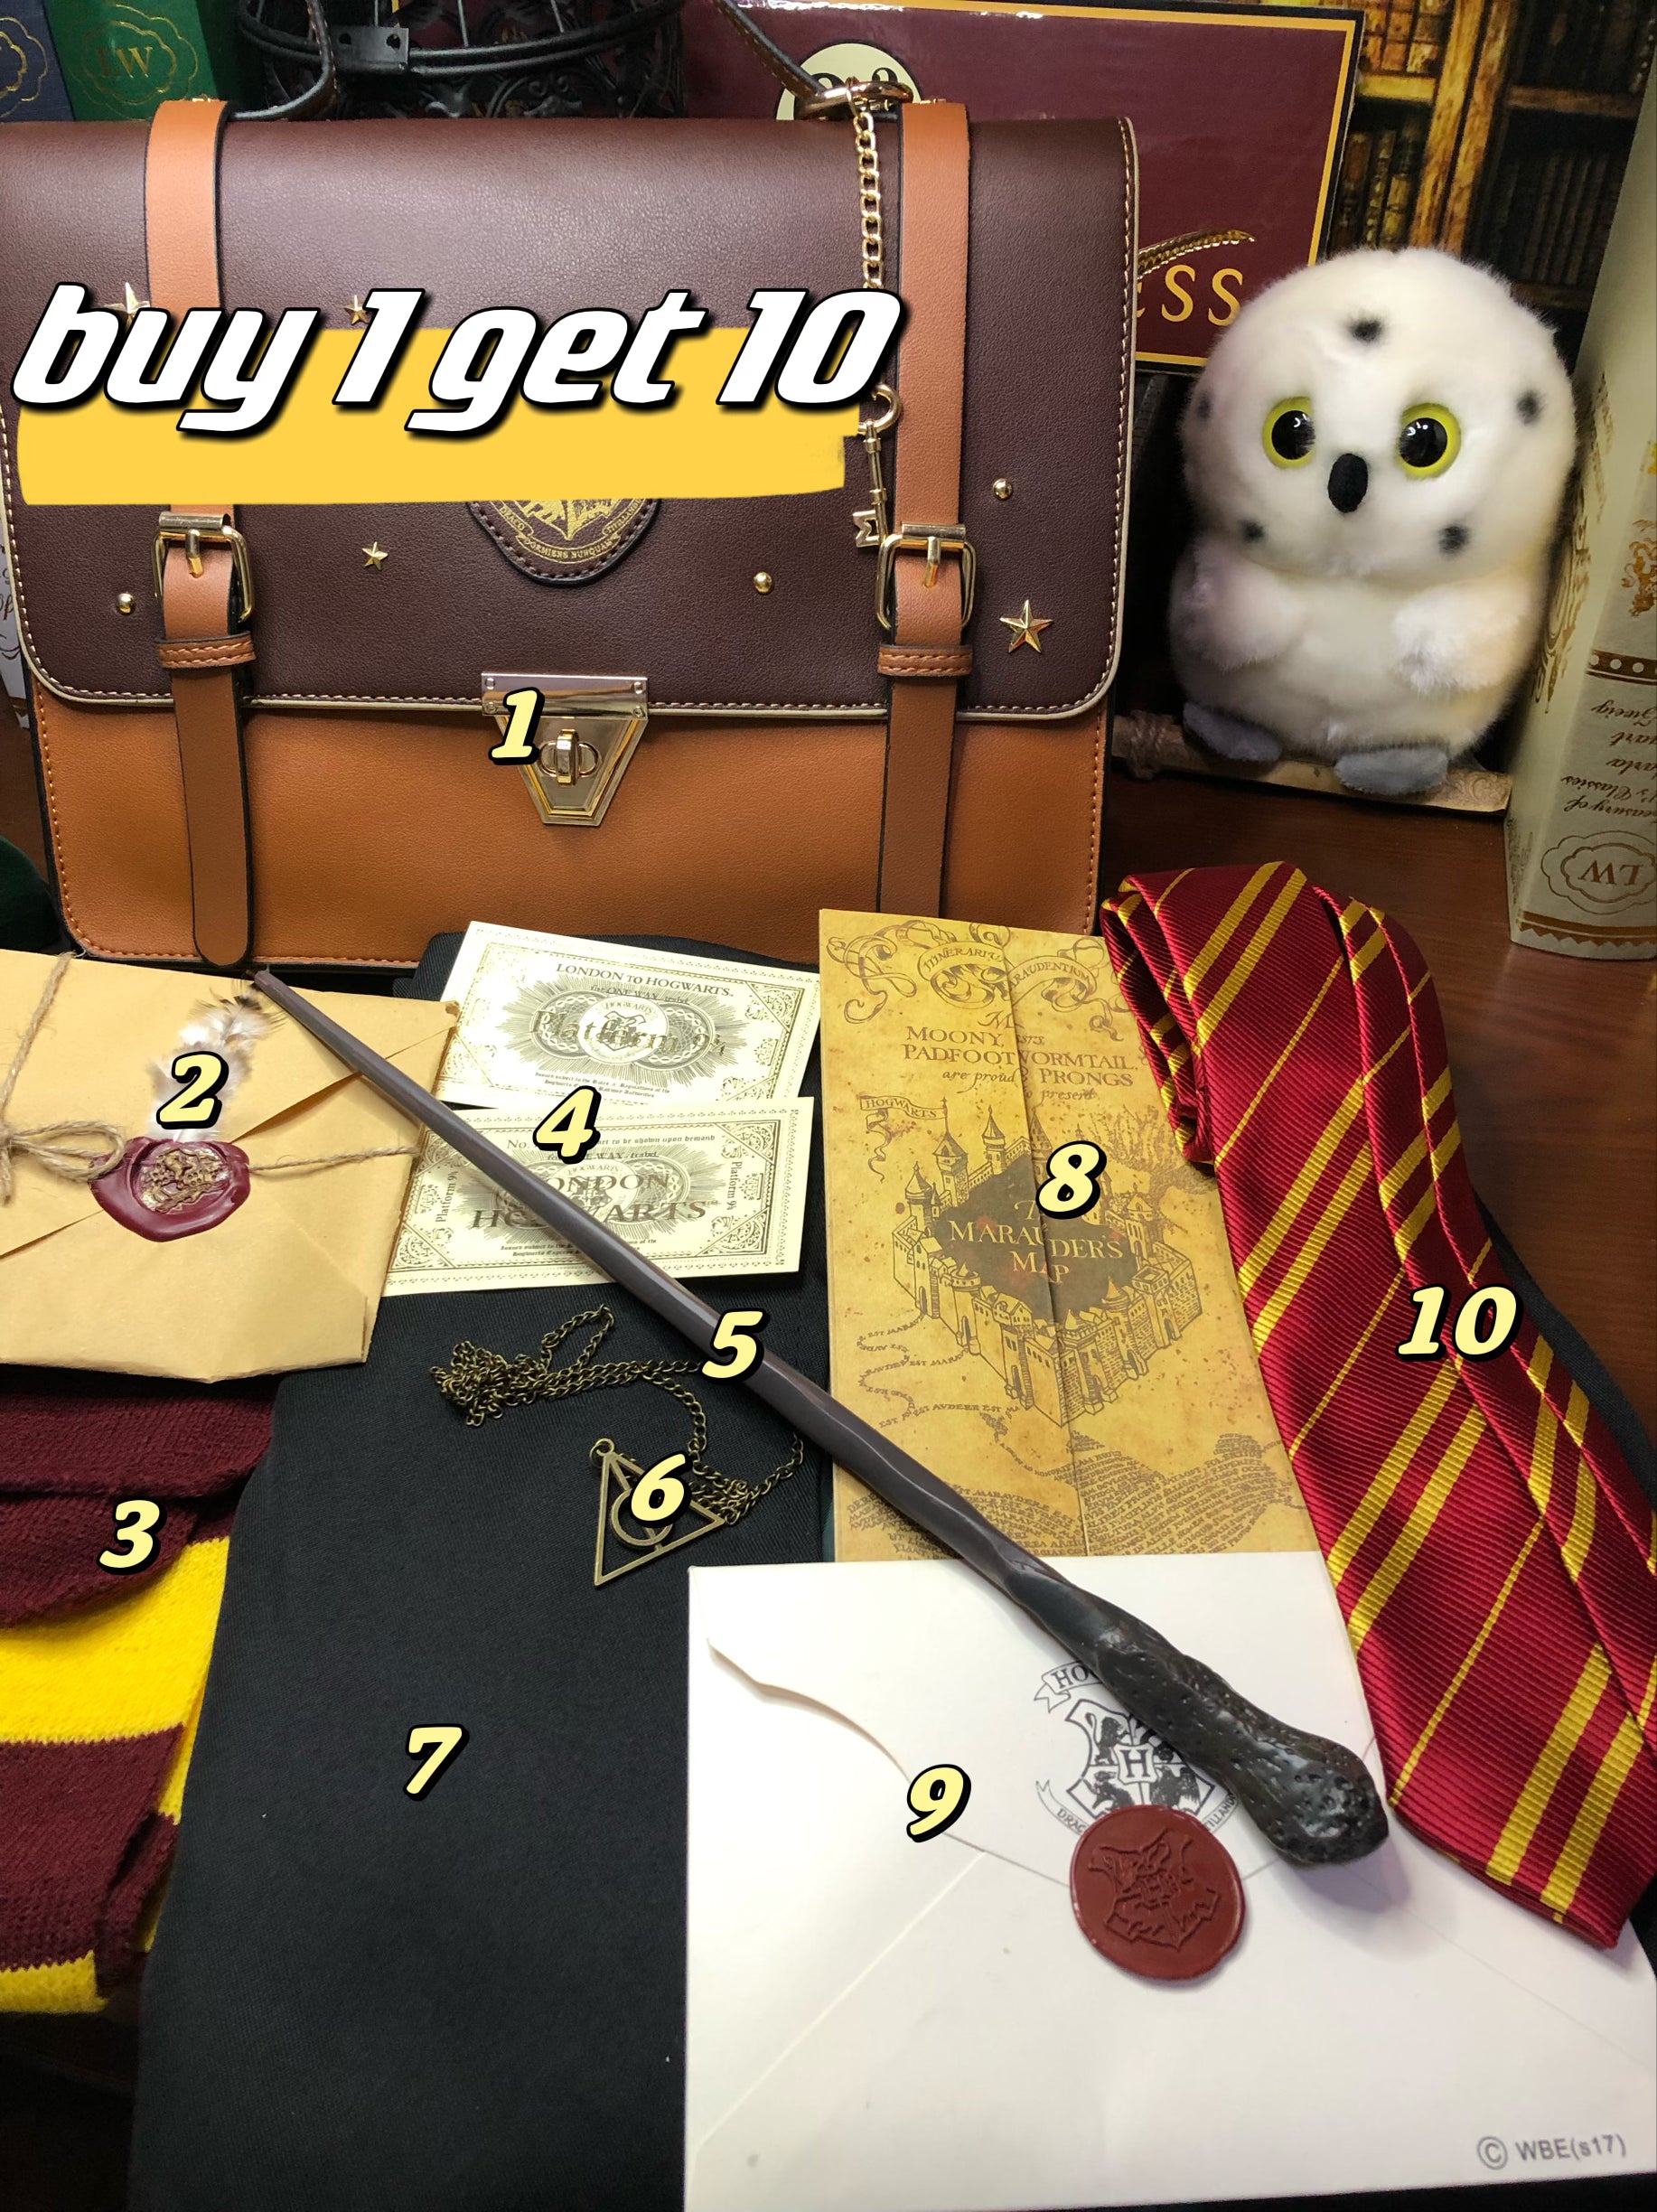 Wizard bag set(buy1get10)